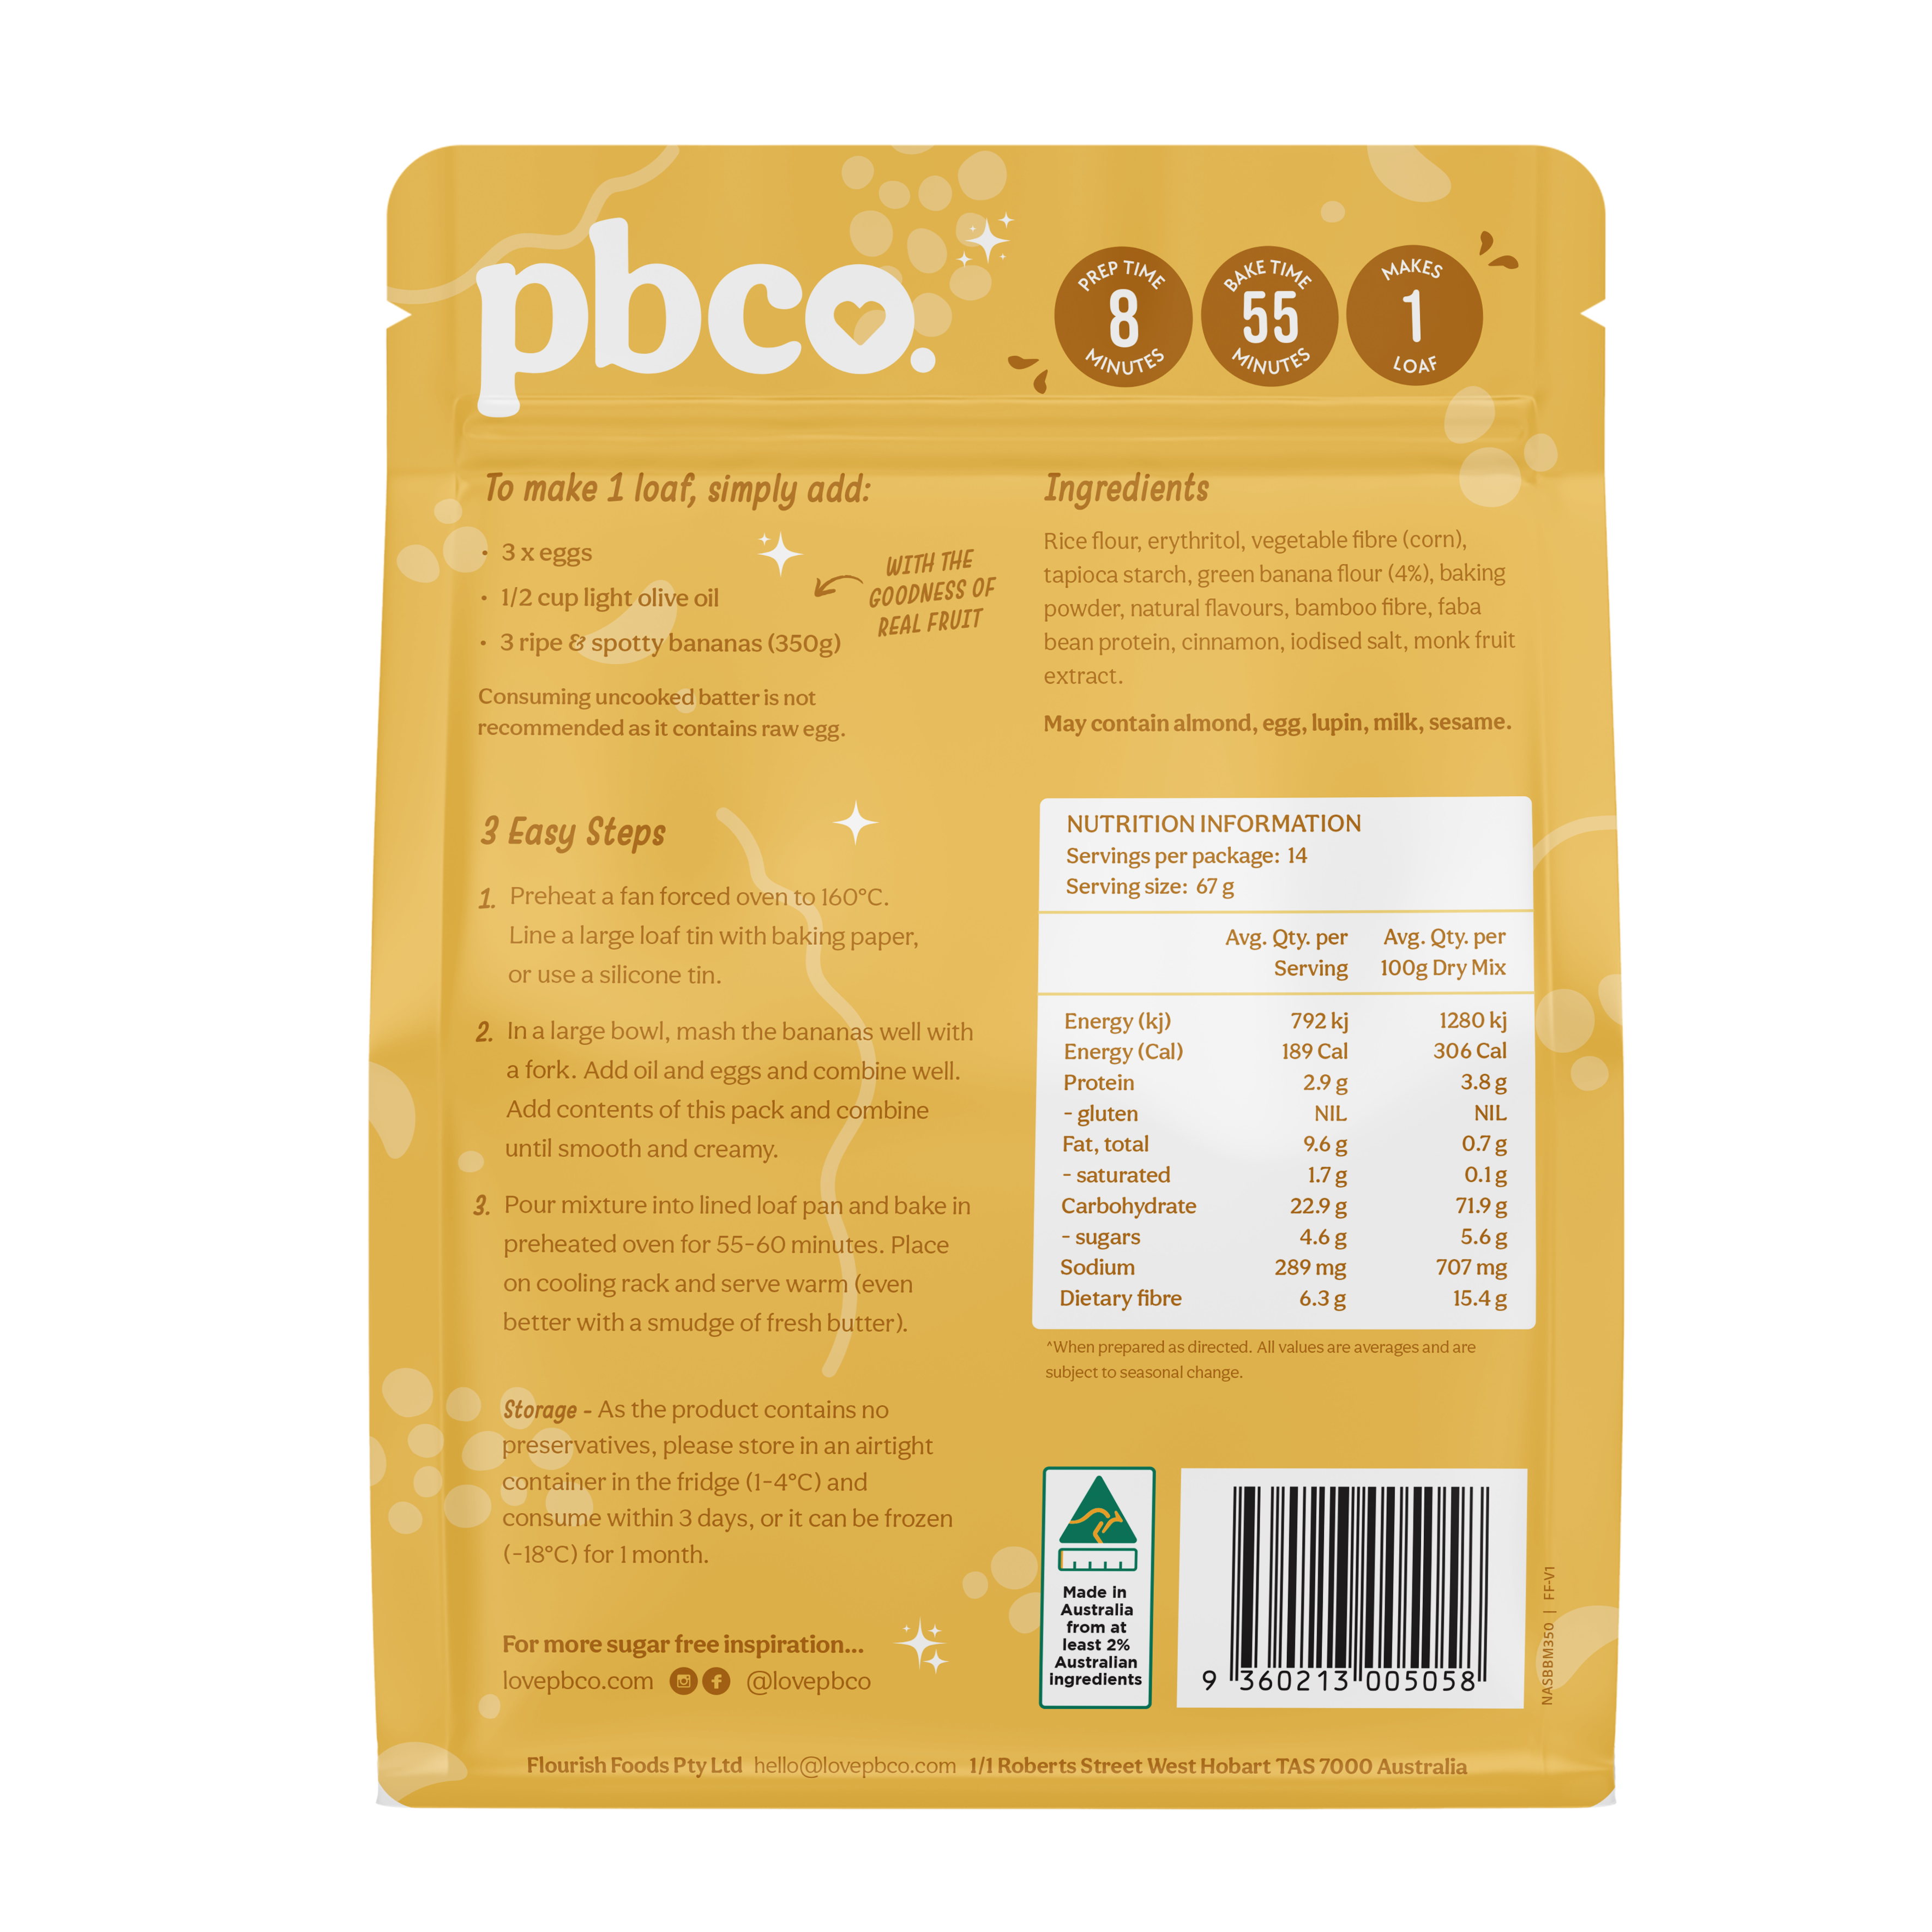 94% Sugar Free Banana Bread - 350g - Low carb & sugar free Sensibly Sweet Baking Mixes - Just $11.95! Shop now at PBCo.